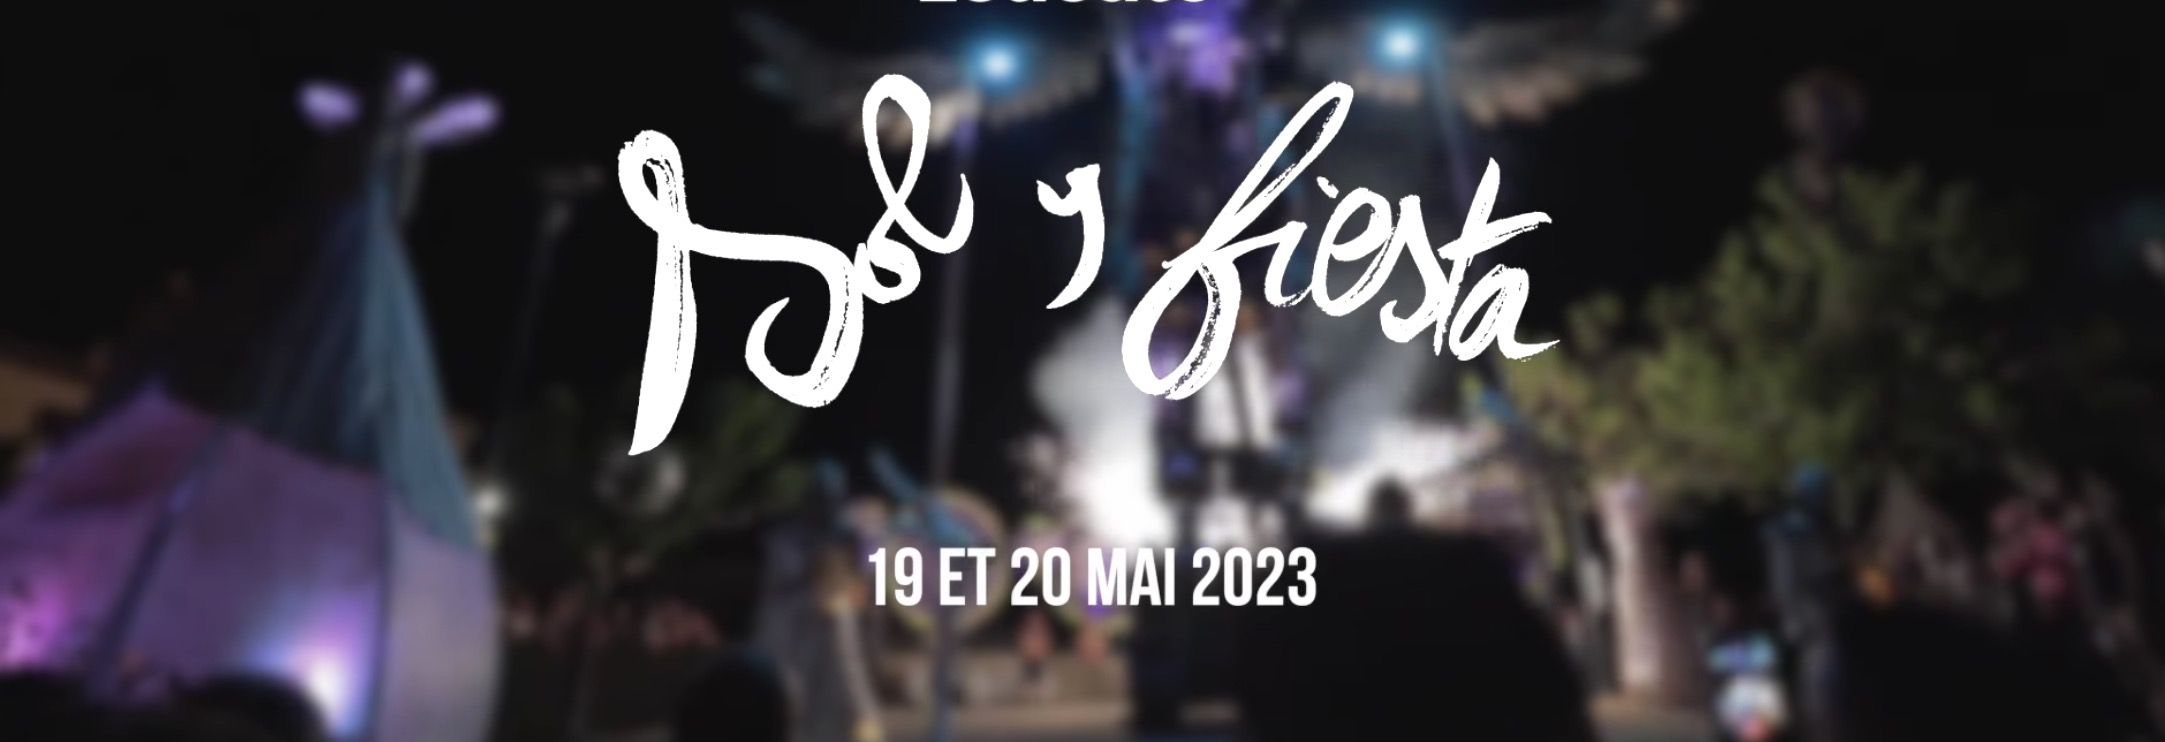 Bannière Sol y Fiesta - 19 et 20 mai 2023